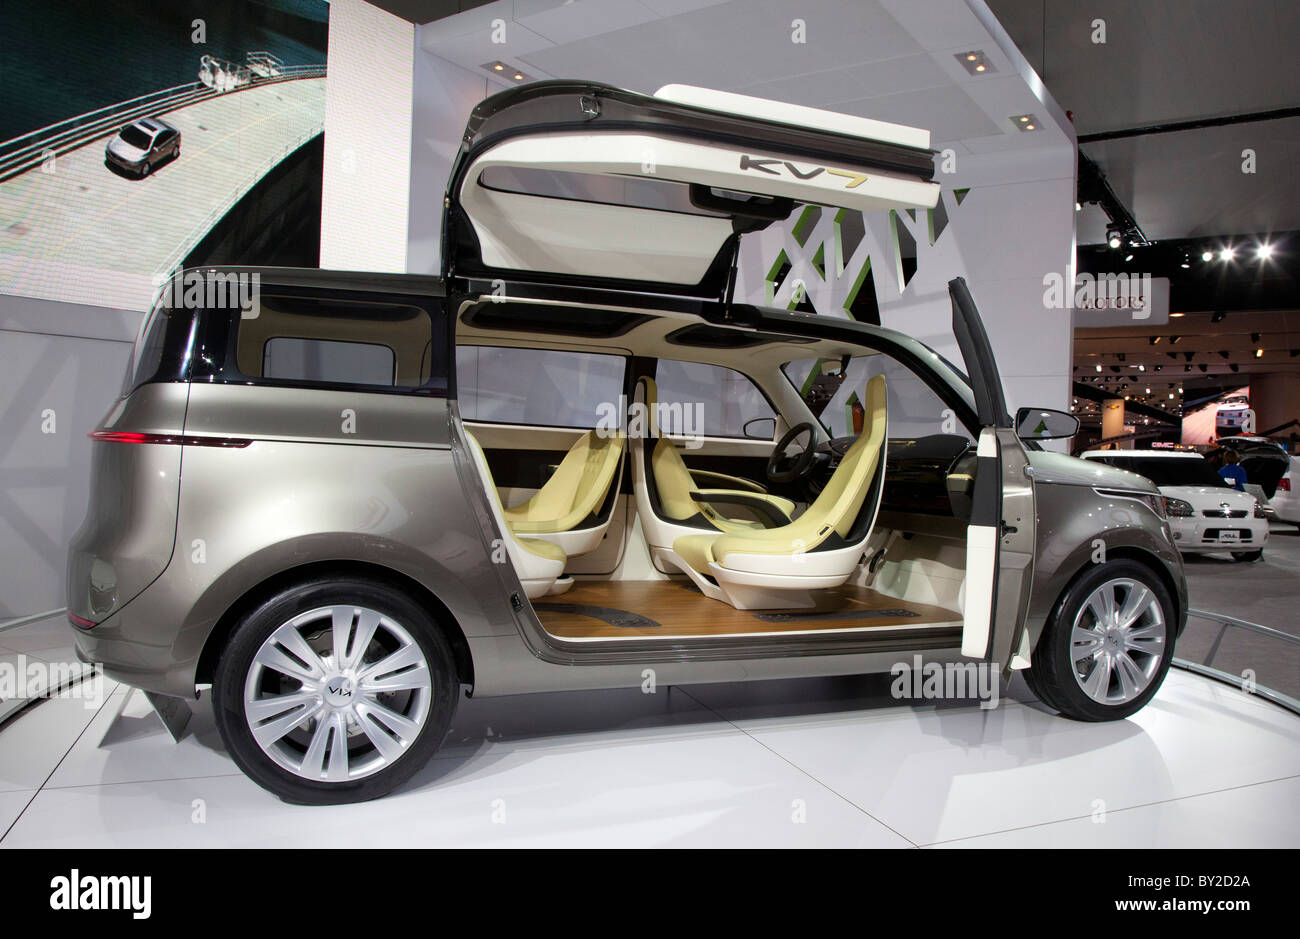 Detroit, Michigan - der Kia KV7 Concept Cars auf dem Display auf der North American International Auto Show. Stockfoto